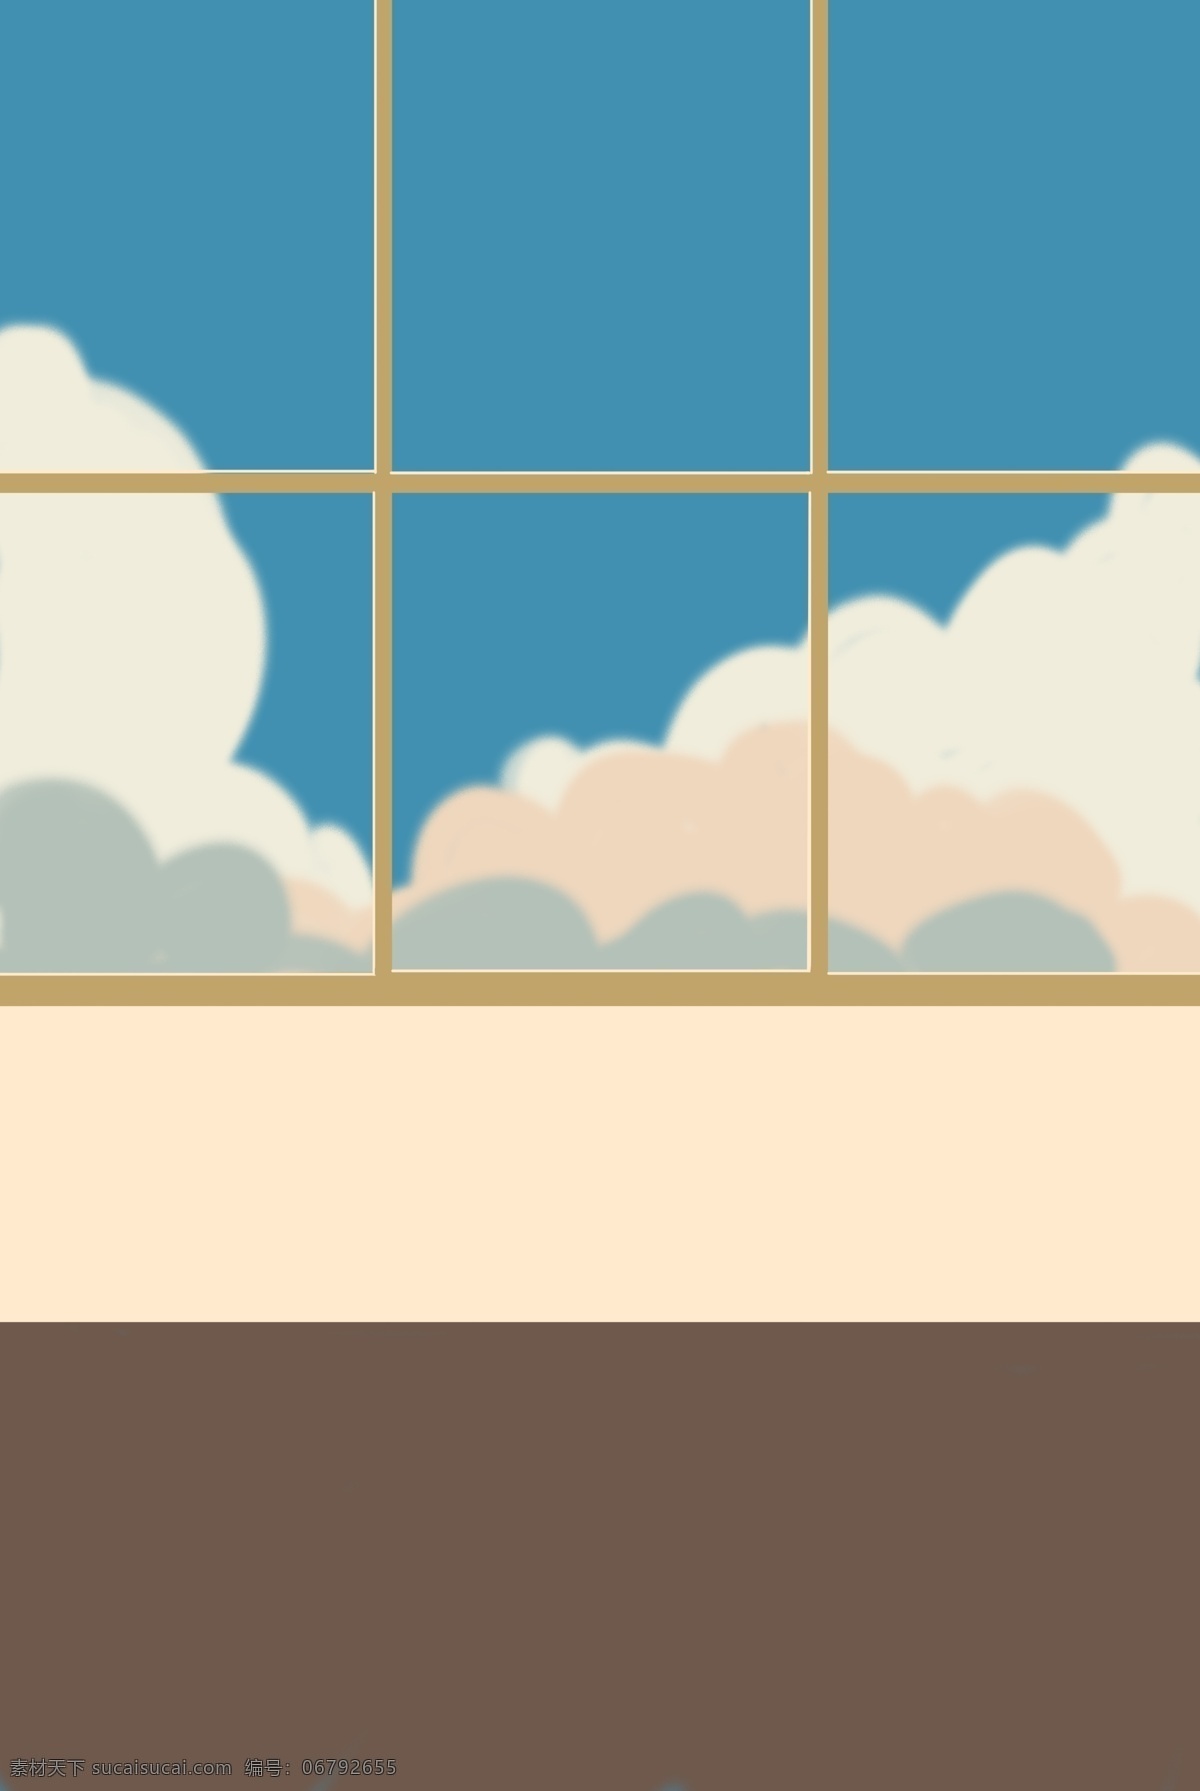 卡通 室内 大 玻璃窗 背景 蓝天 白云背景 室内背景 窗户 家中背景 天空 云朵 柔软 方格玻璃 简约背景 卡通背景